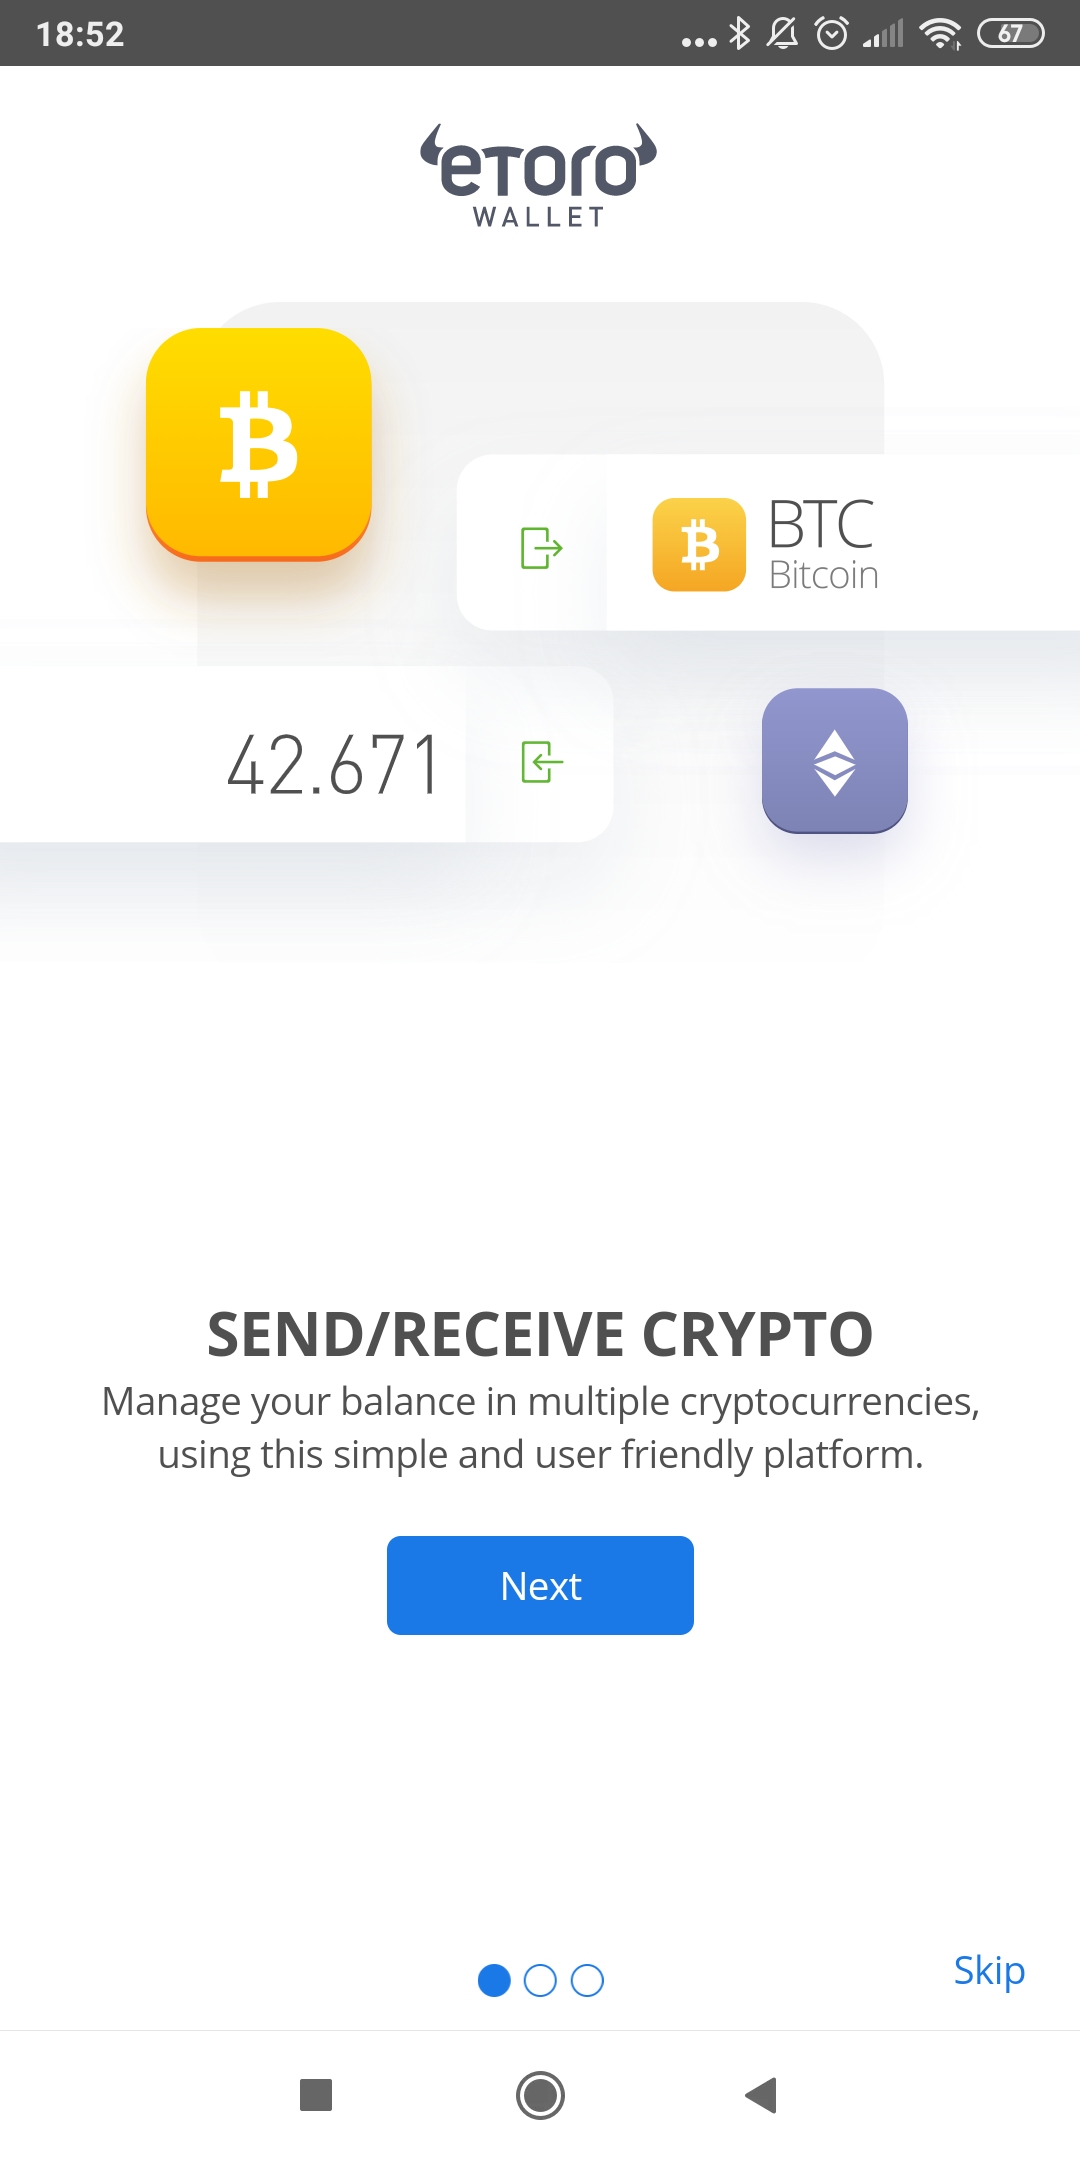 eToro wallet consente di inviare e ricevere criptovalute tra cui bitcoin